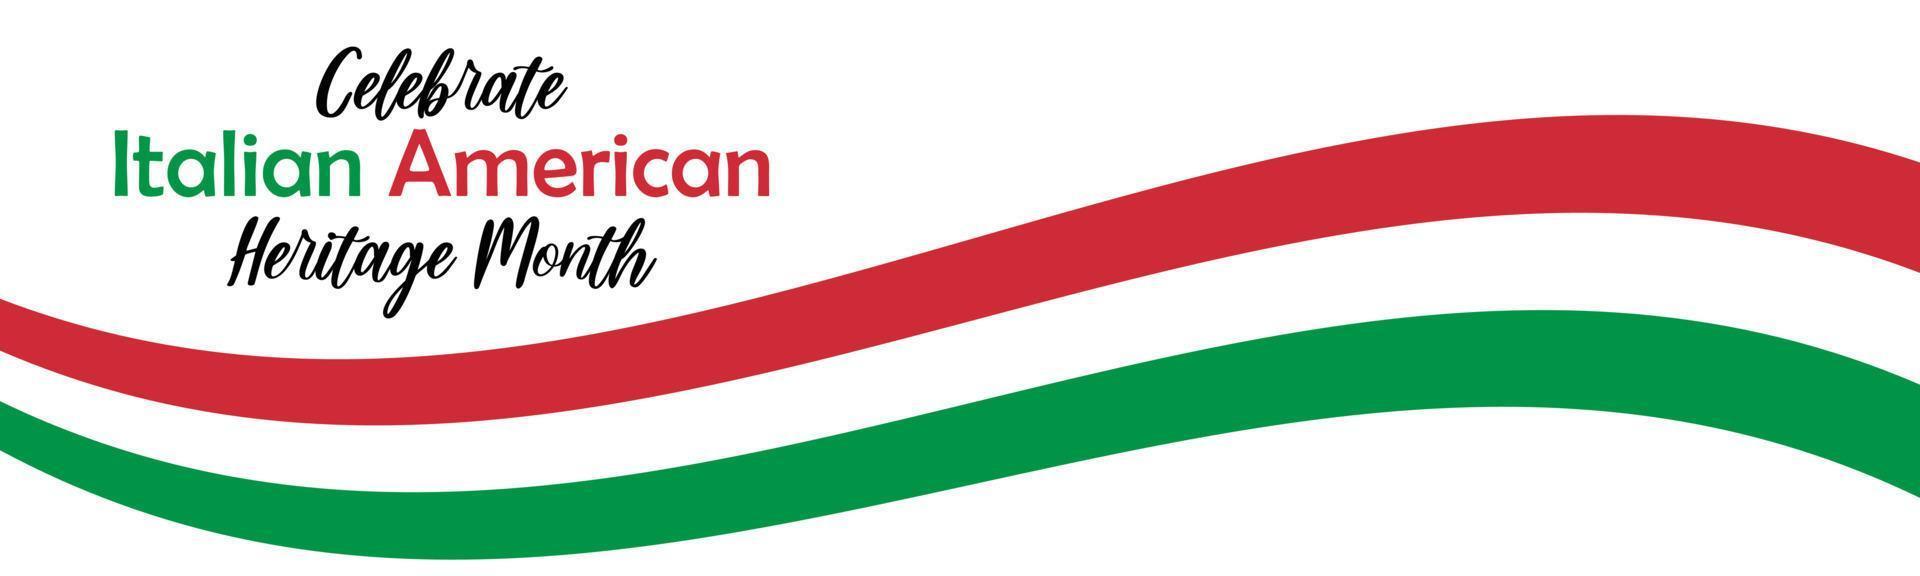 italienisch-amerikanischer erbemonat einfaches langes horizontales banner mit text und italienischer flagge gren und roten streifen. Vektor-Illustration. vorlage, karte, plakatdesign vektor